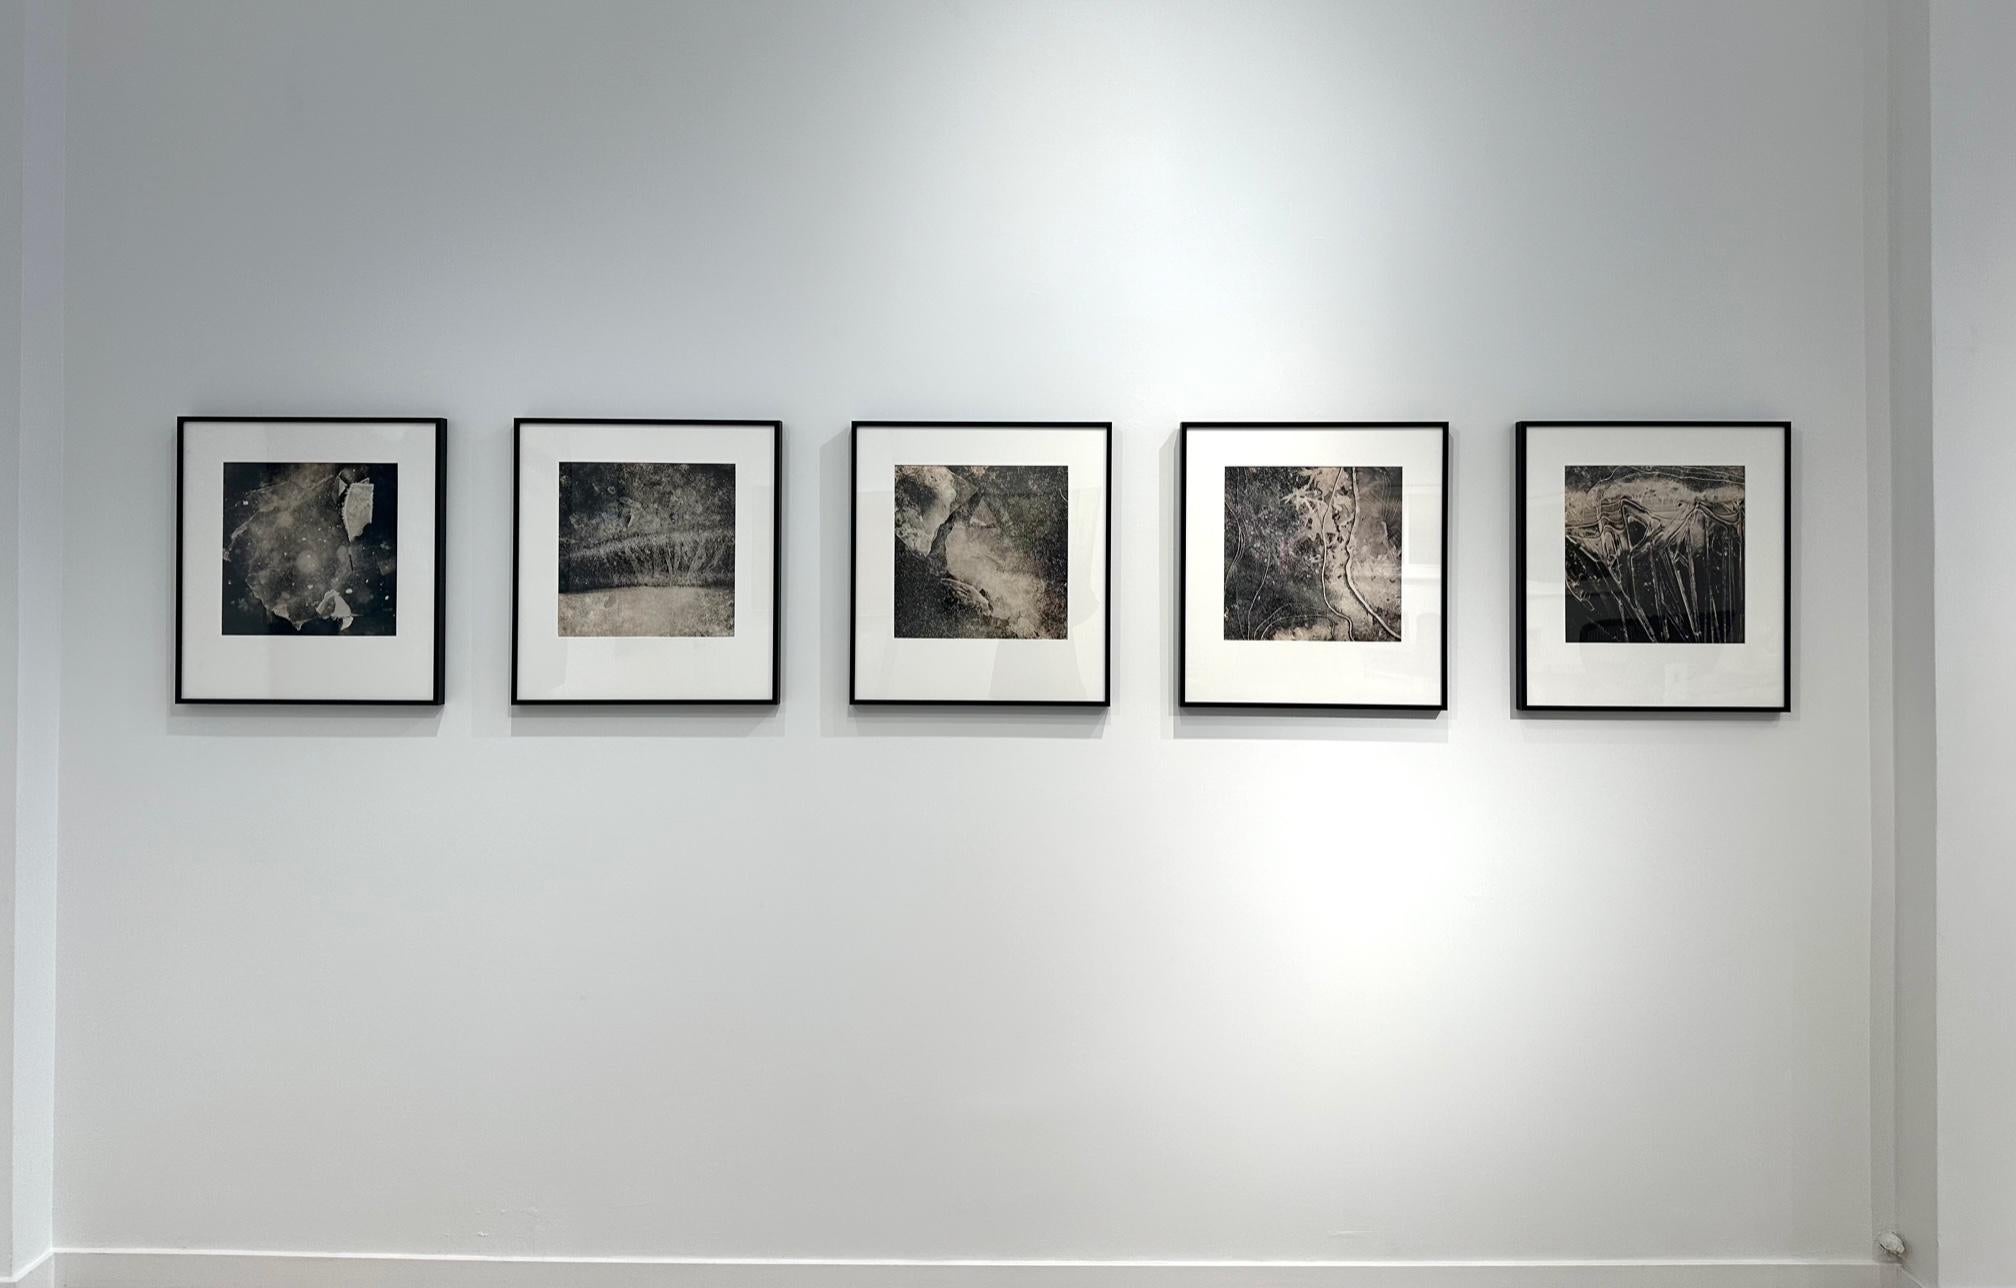 Portales de glace n° 3498 / photographie de nature en noir et blanc - Contemporain Photograph par Alyson Belcher